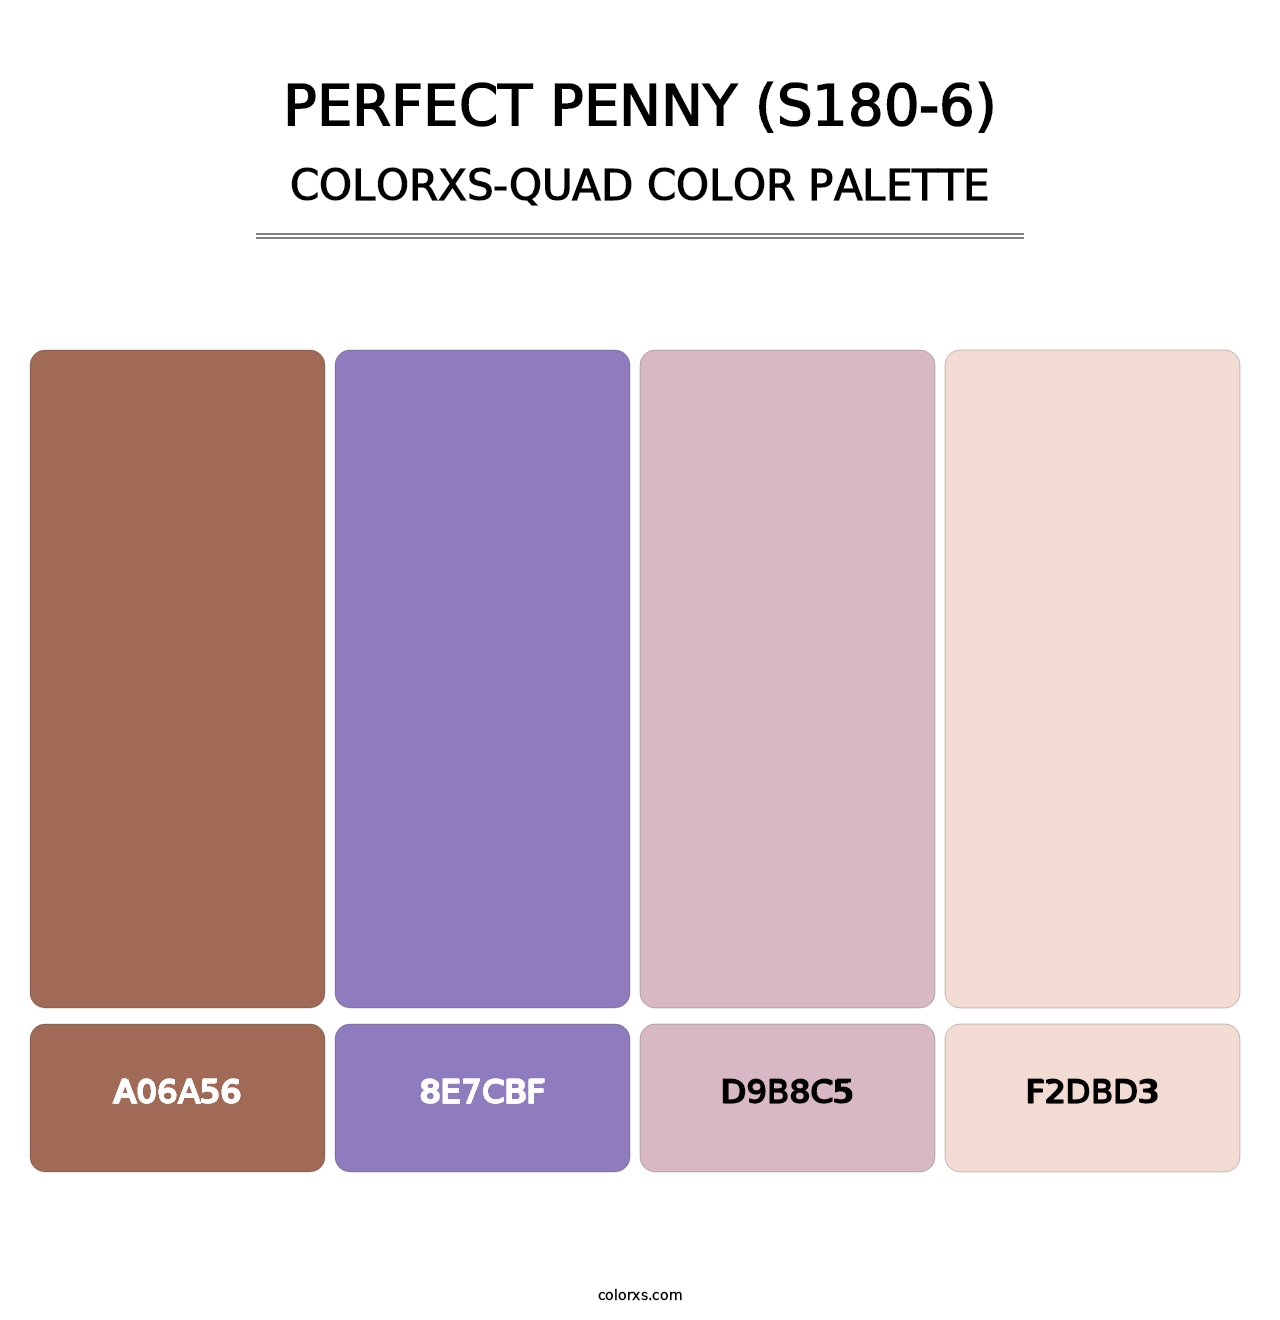 Perfect Penny (S180-6) - Colorxs Quad Palette